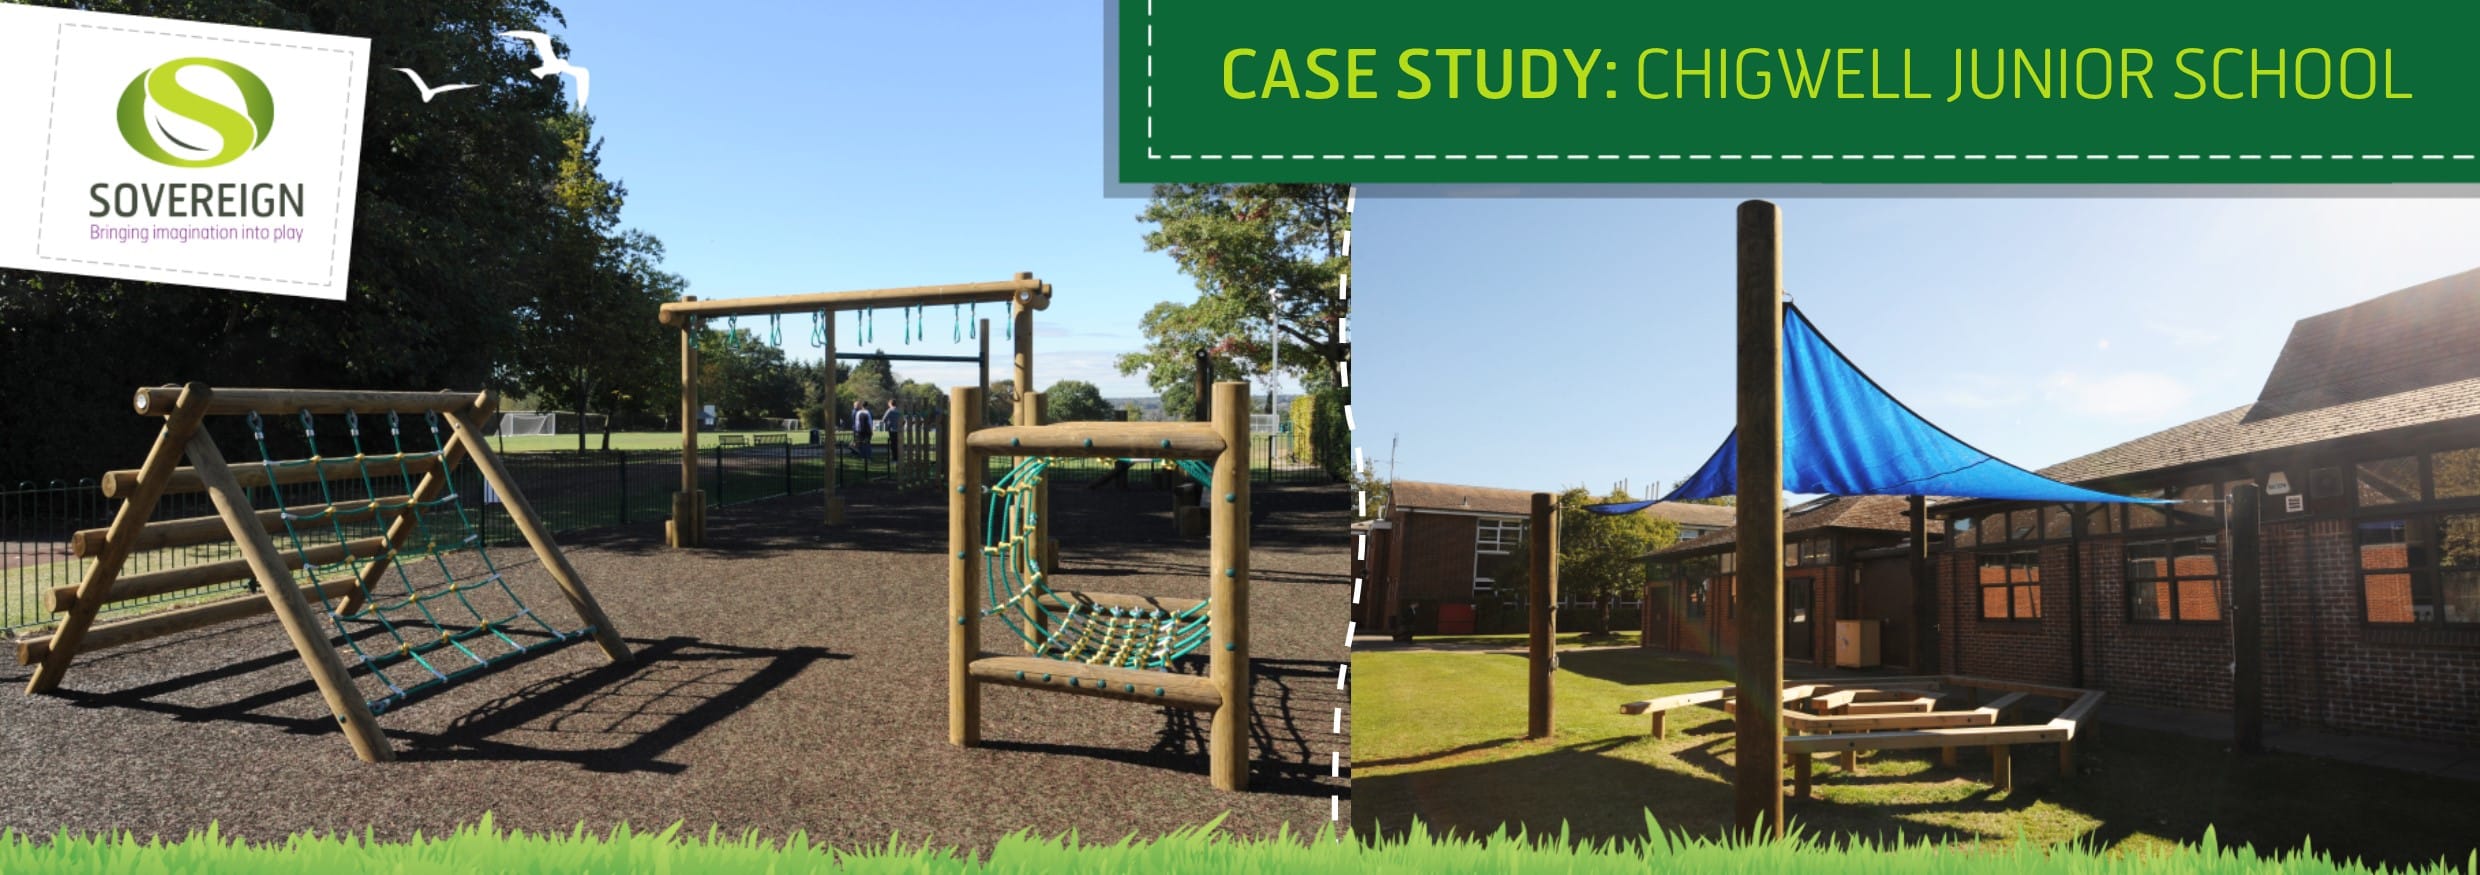 Case Study: Chigwell Junior School